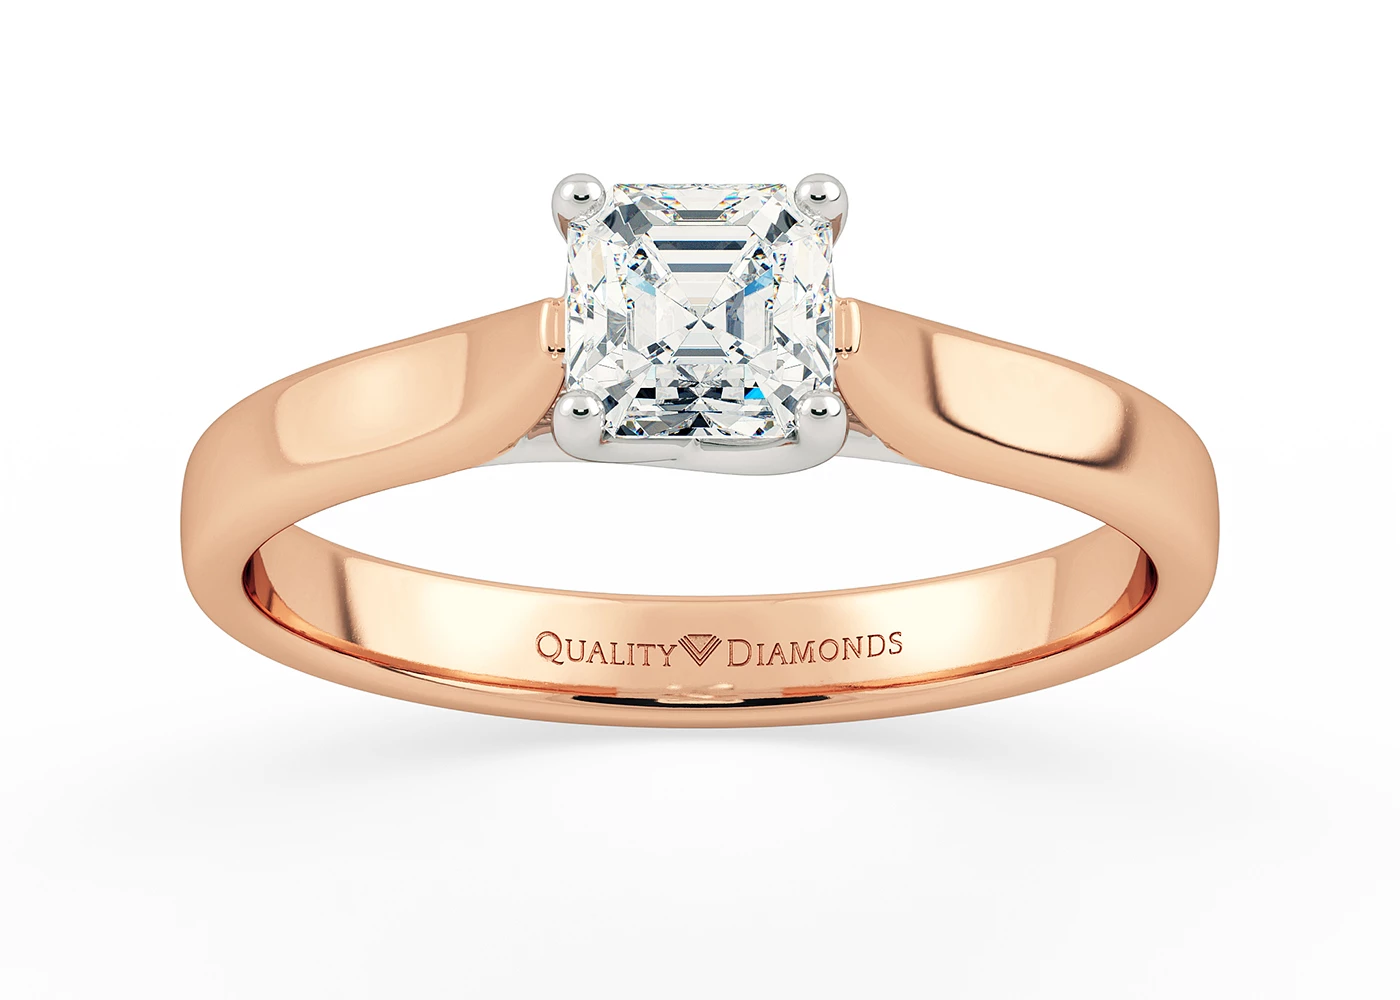 Asscher Mirabelle Diamond Ring in 18K Rose Gold